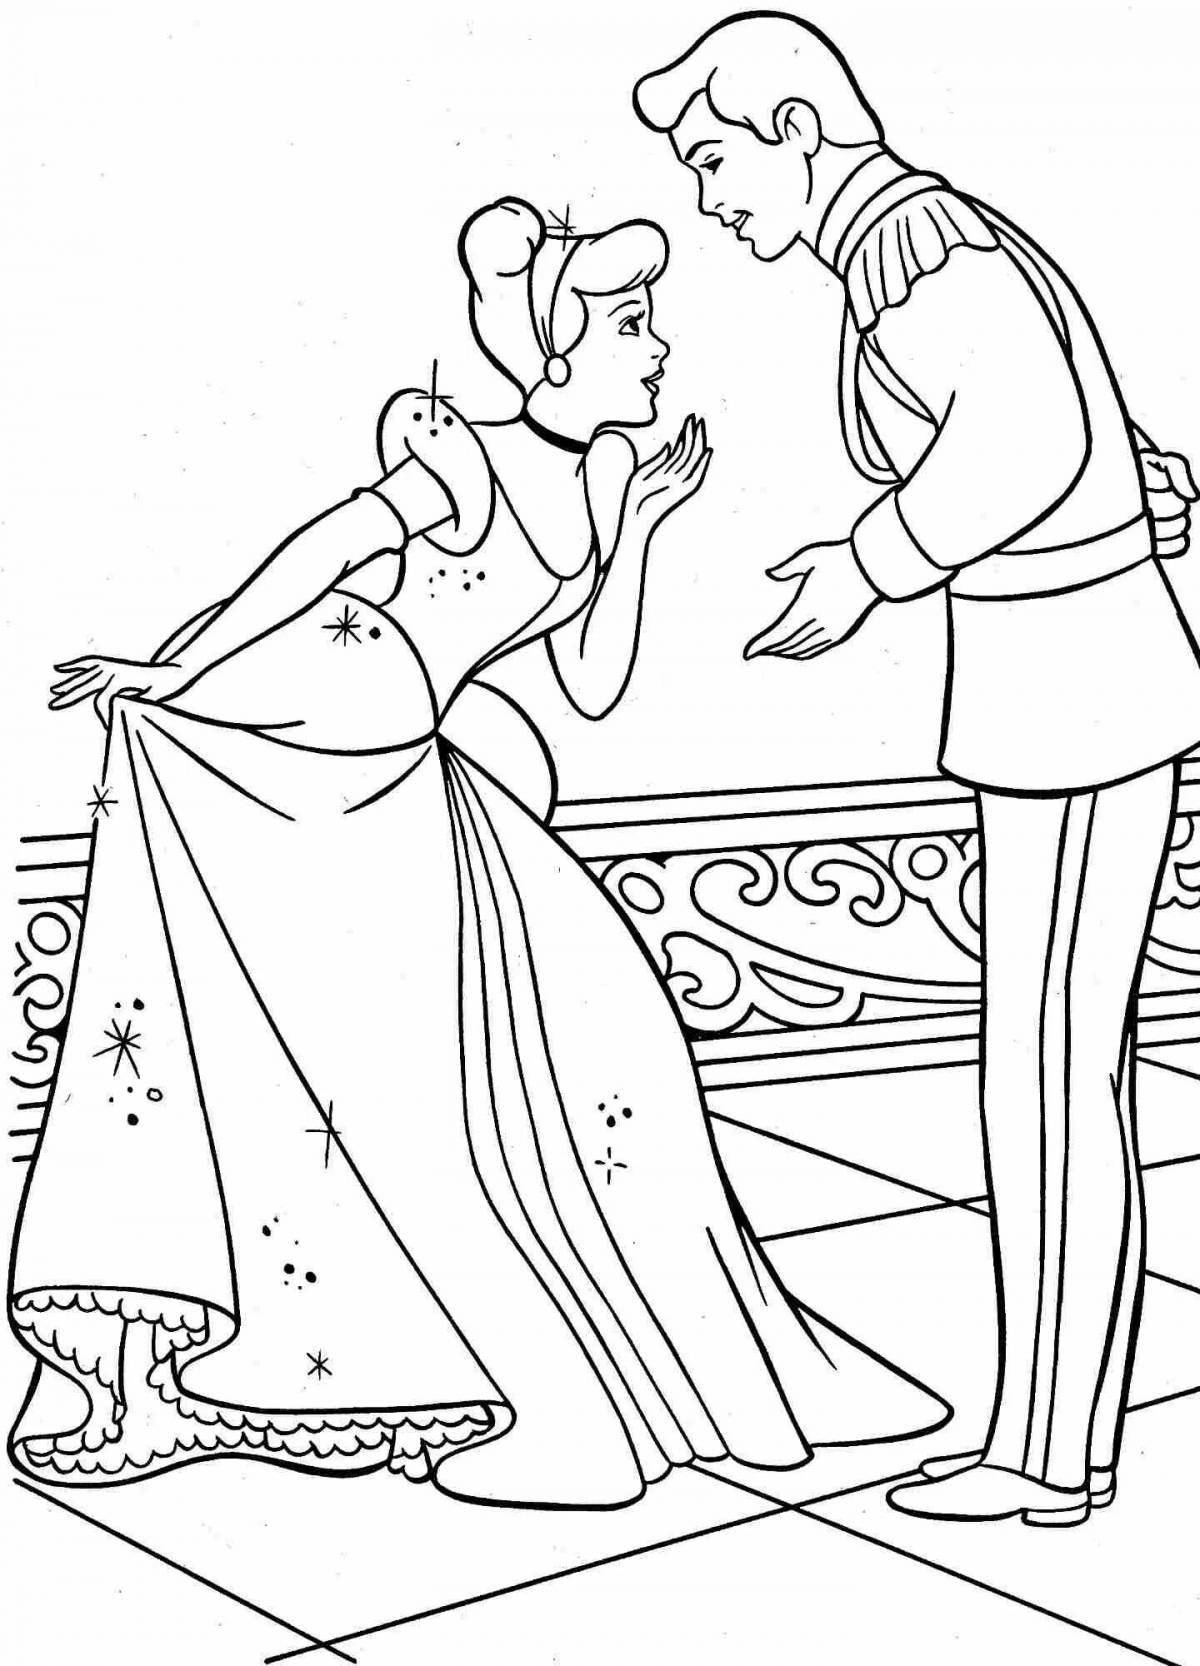 Coloring page charming princess at the ball